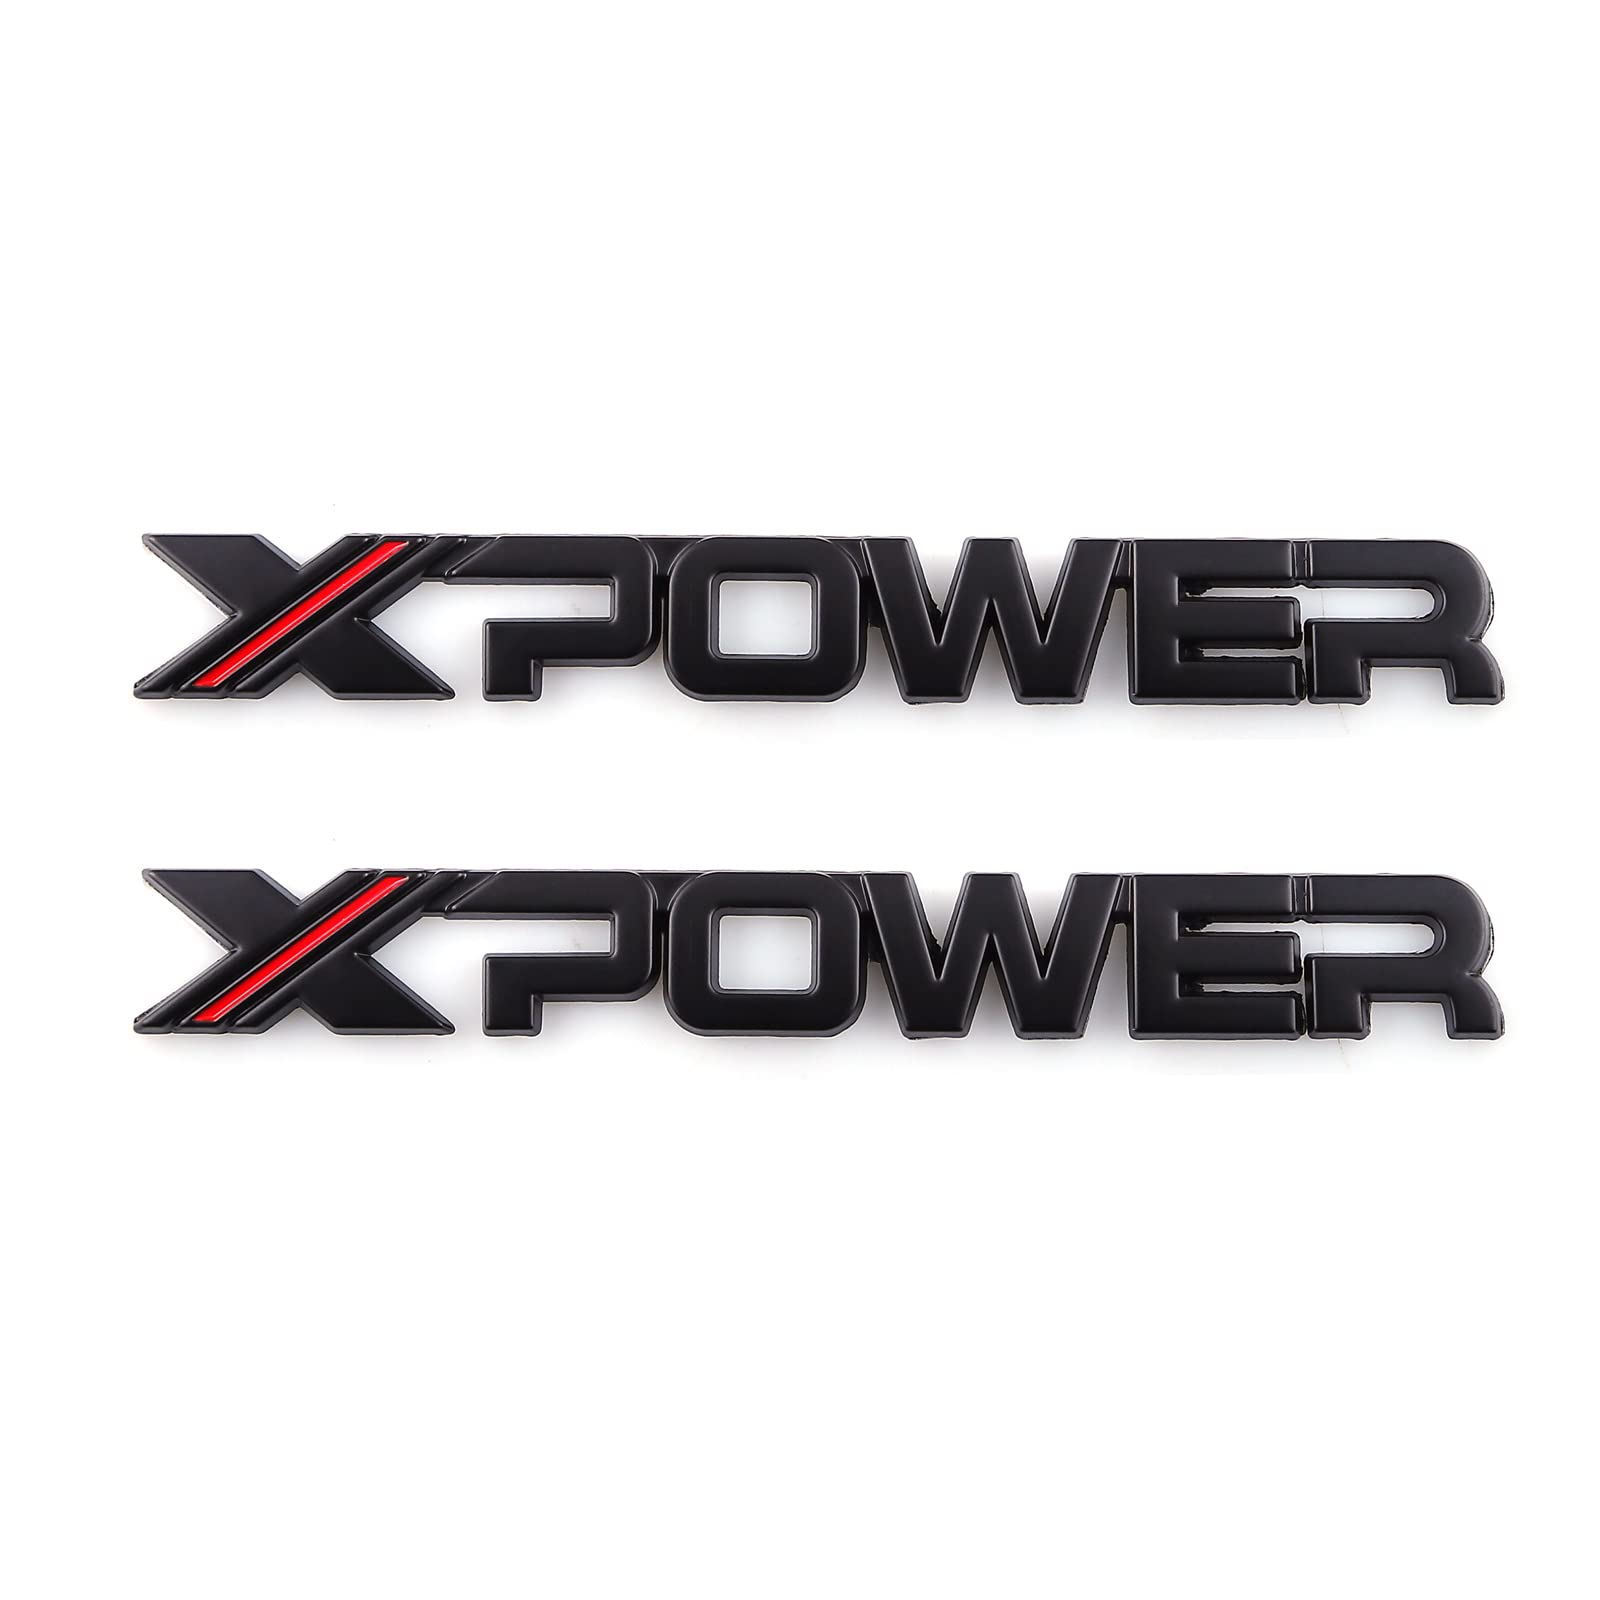 X-Power Auto-Aufkleber mit Logo-Schriftzug, Schwarz / Rot, 2 Stück von SGW